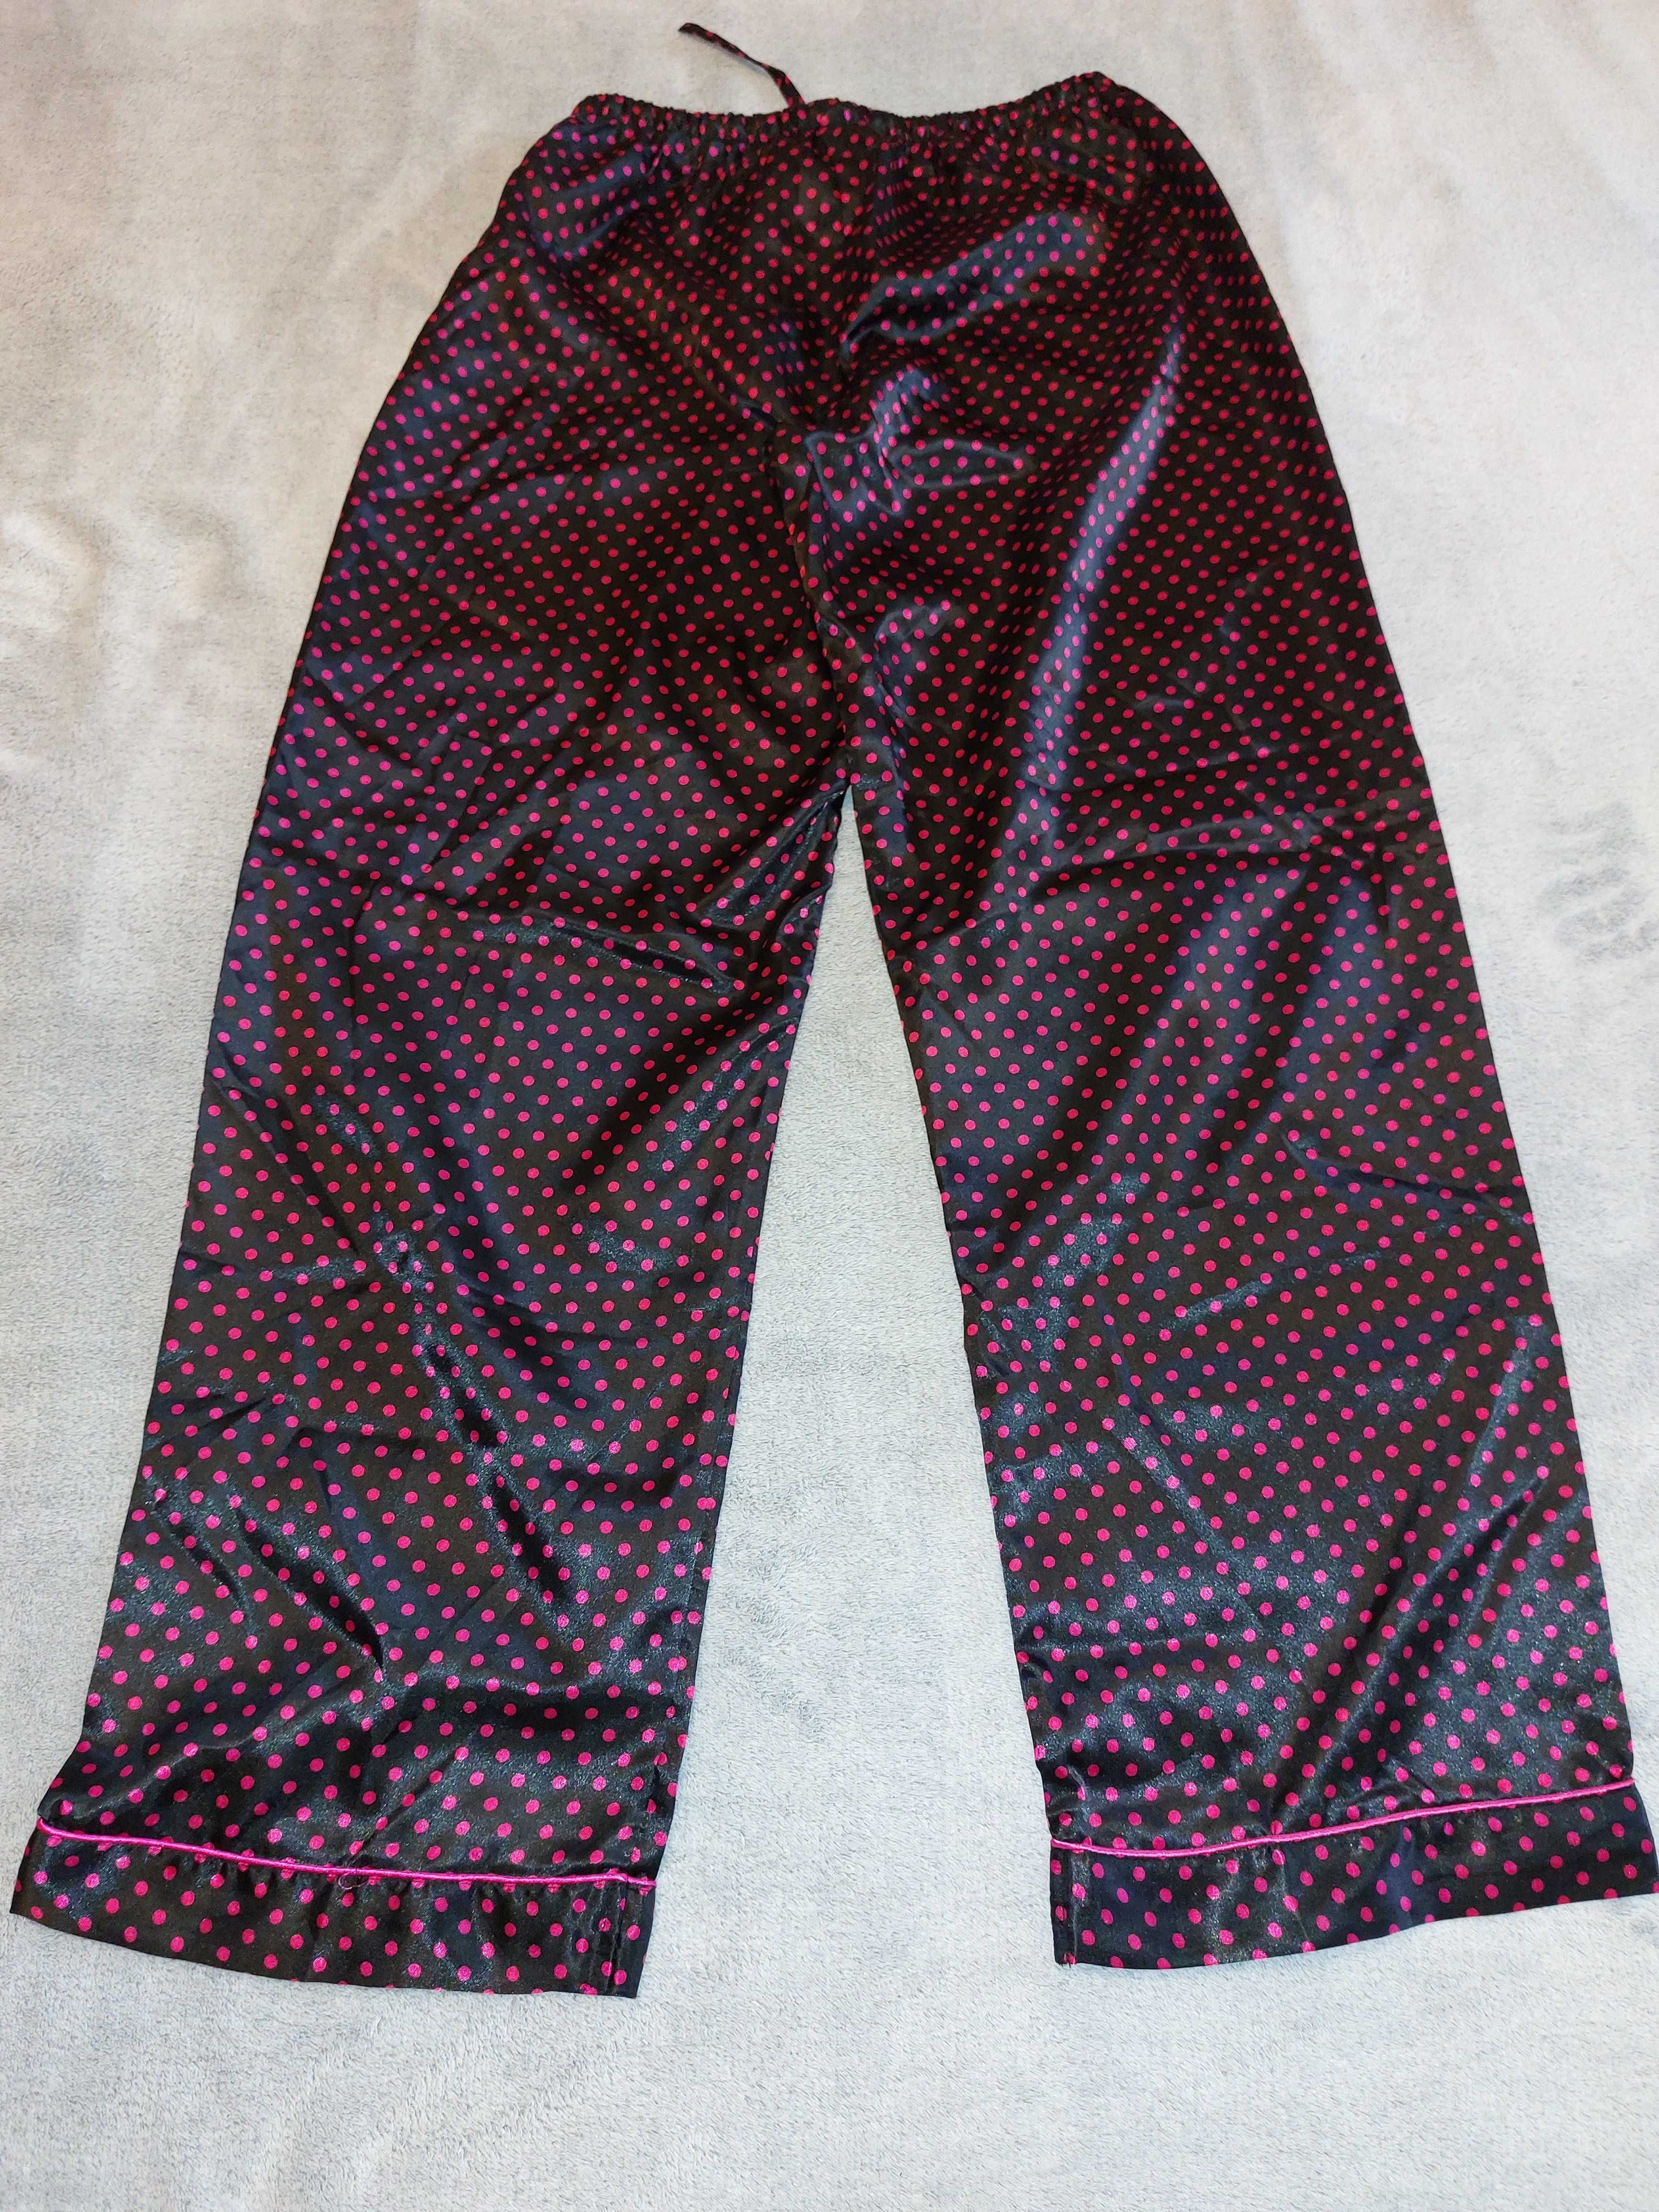 Spodnie piżamowe czarne w różowe kropki, rozmiar M-L, LBT